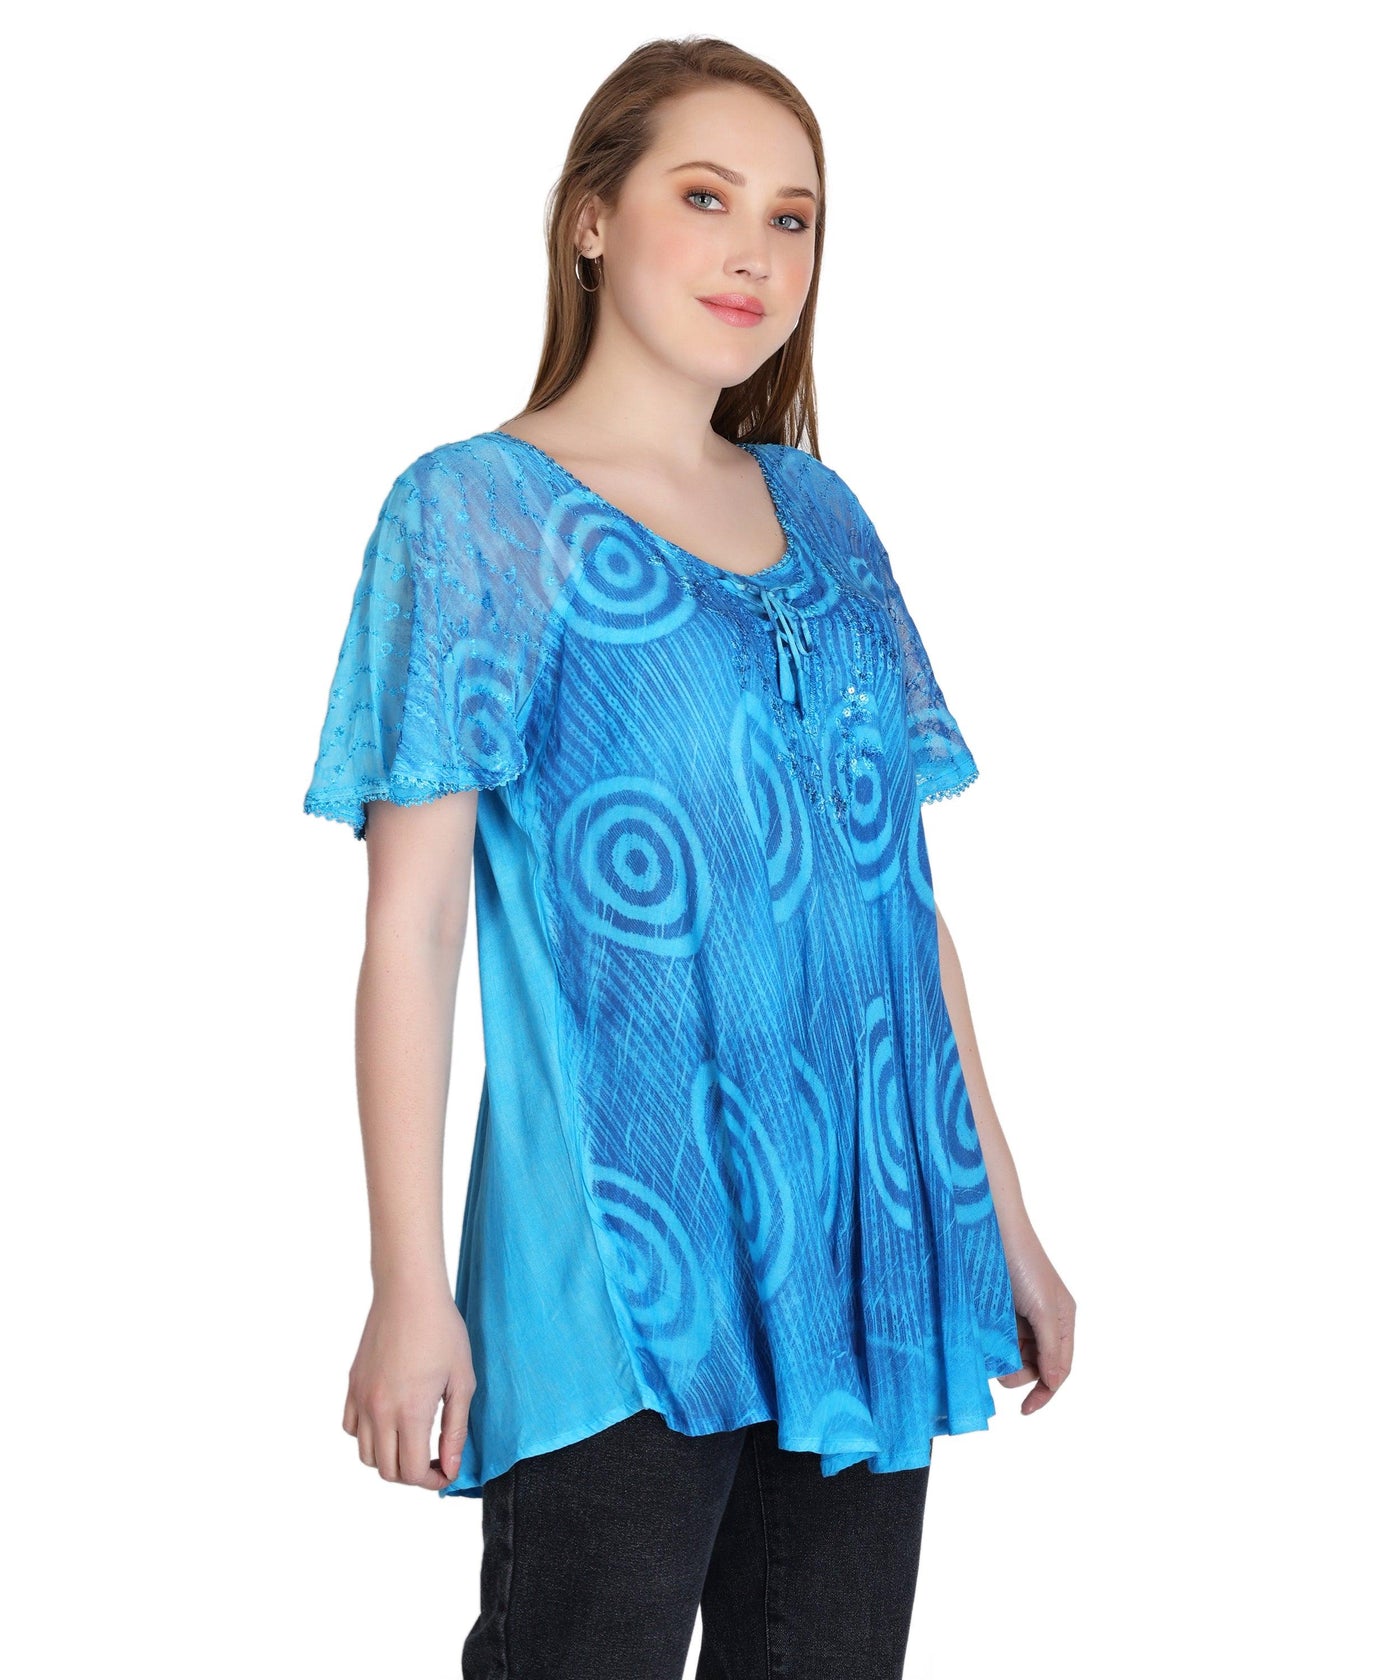 Swirl Tie Dye Cap Sleeve Blouse 302175  - Advance Apparels Inc